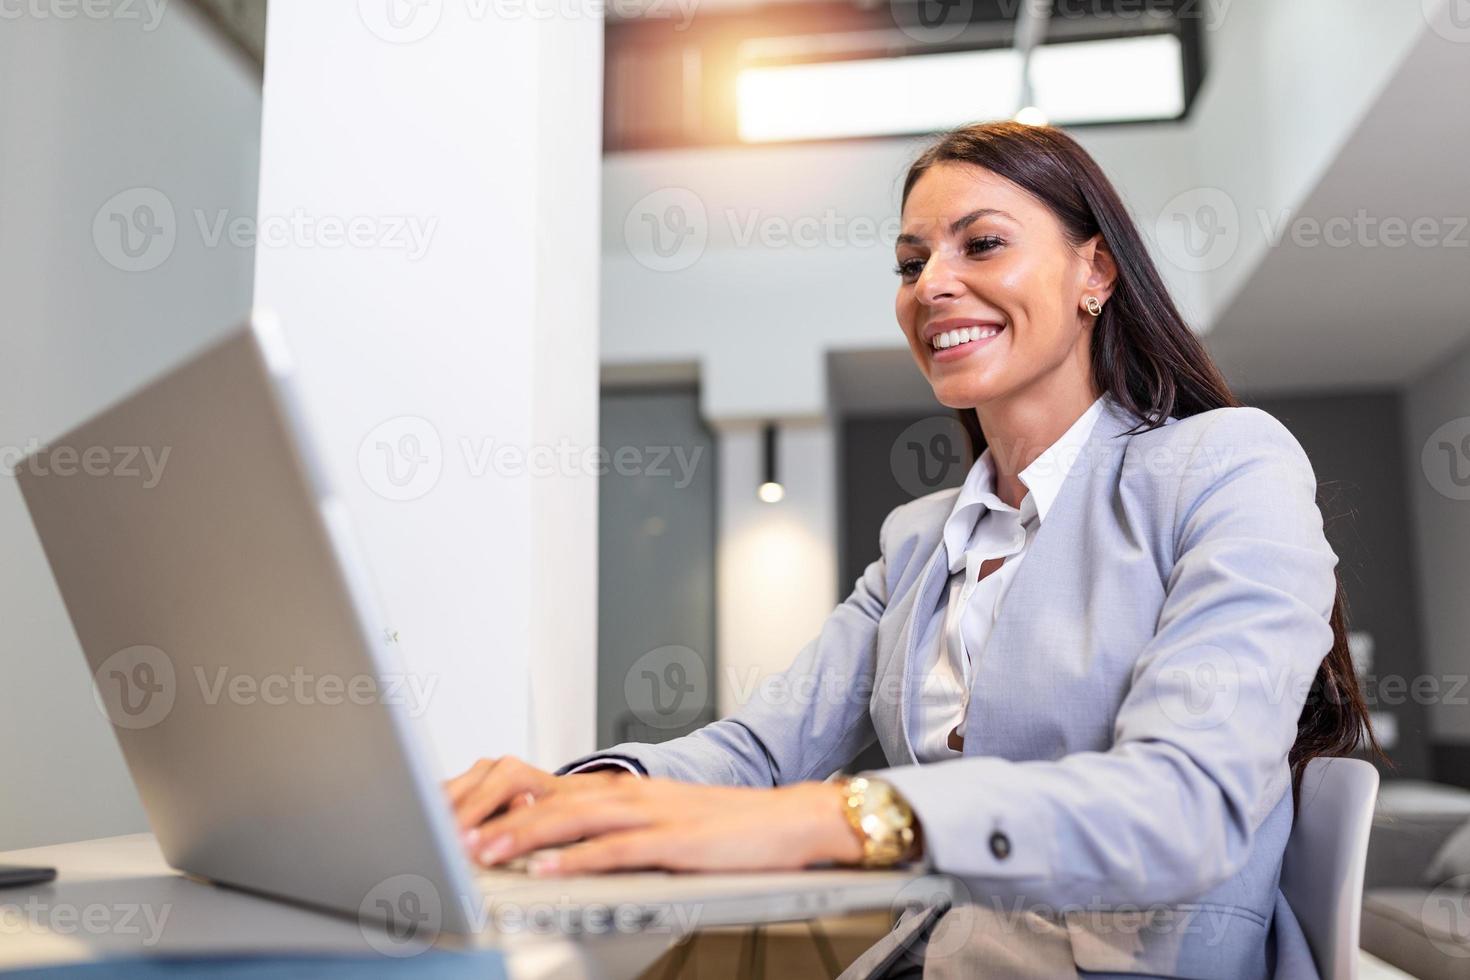 jeune femme travaillant à domicile, alors qu'elle était isolée en quarantaine pendant la crise sanitaire du covid-19. portrait d'une belle jeune femme d'affaires souriant et regardant un écran d'ordinateur portable photo